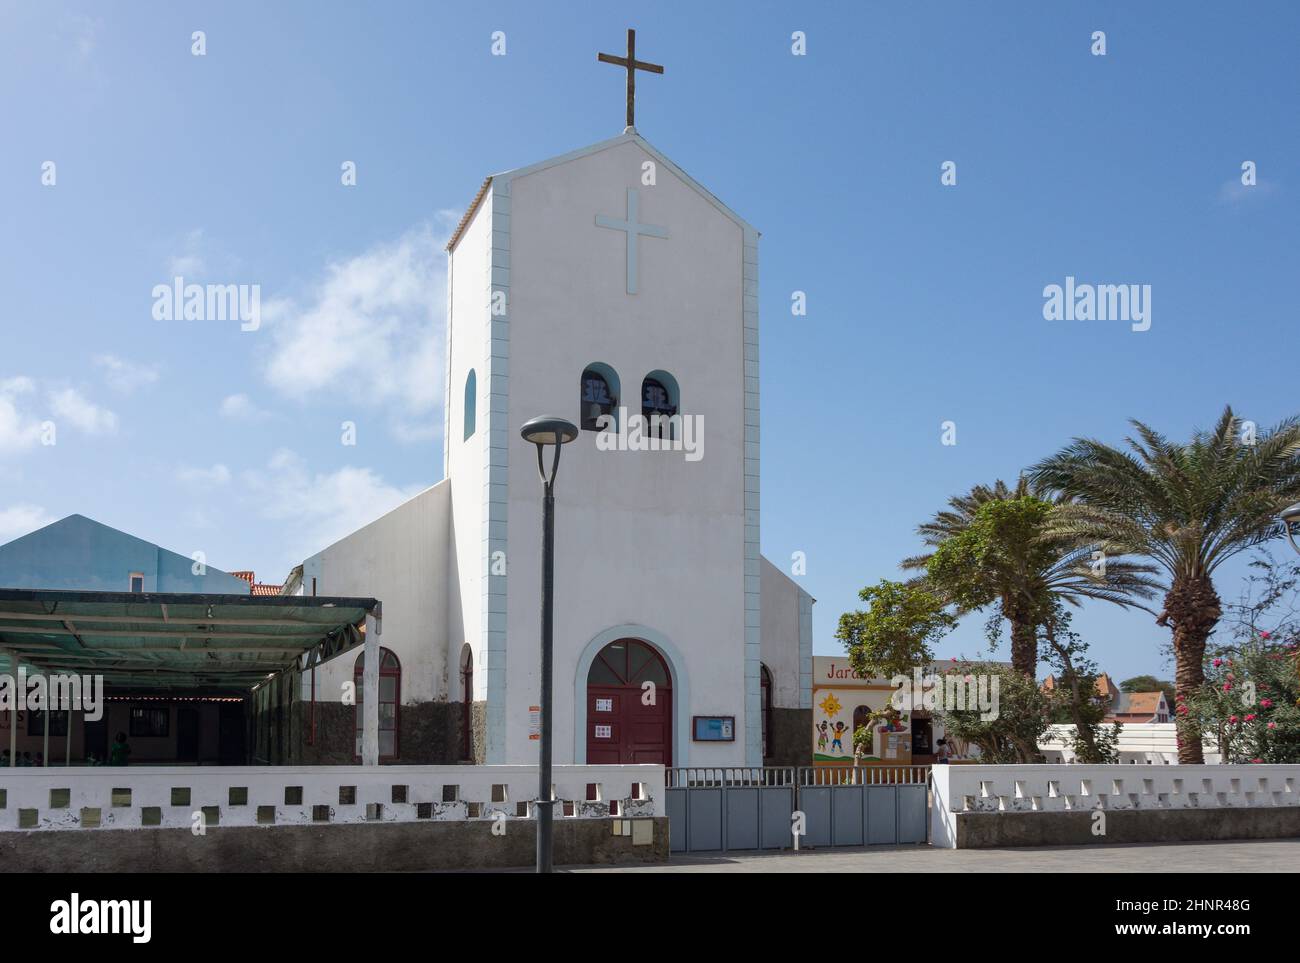 Igreja Catolica (Catholic Church) de Santa Maria, Rua 1 De Junho, Santa Maria, Sal, República de Cabo (Cape Verde) Stock Photo